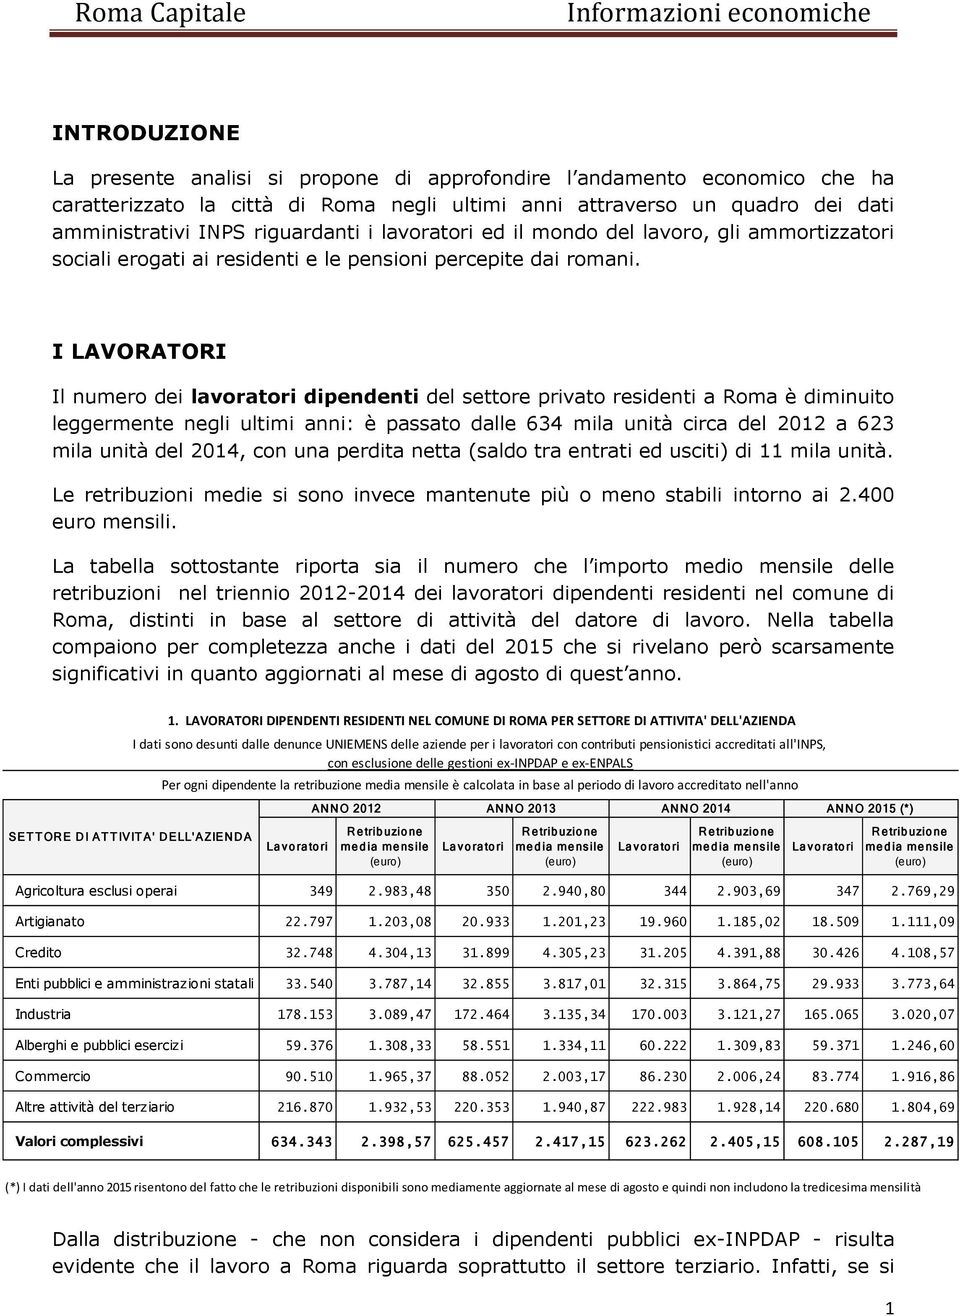 I LAVORATORI Il numero dei lavoratori dipendenti del settore privato residenti a Roma è diminuito leggermente negli ultimi anni: è passato dalle 634 mila unità circa del 2012 a 623 mila unità del